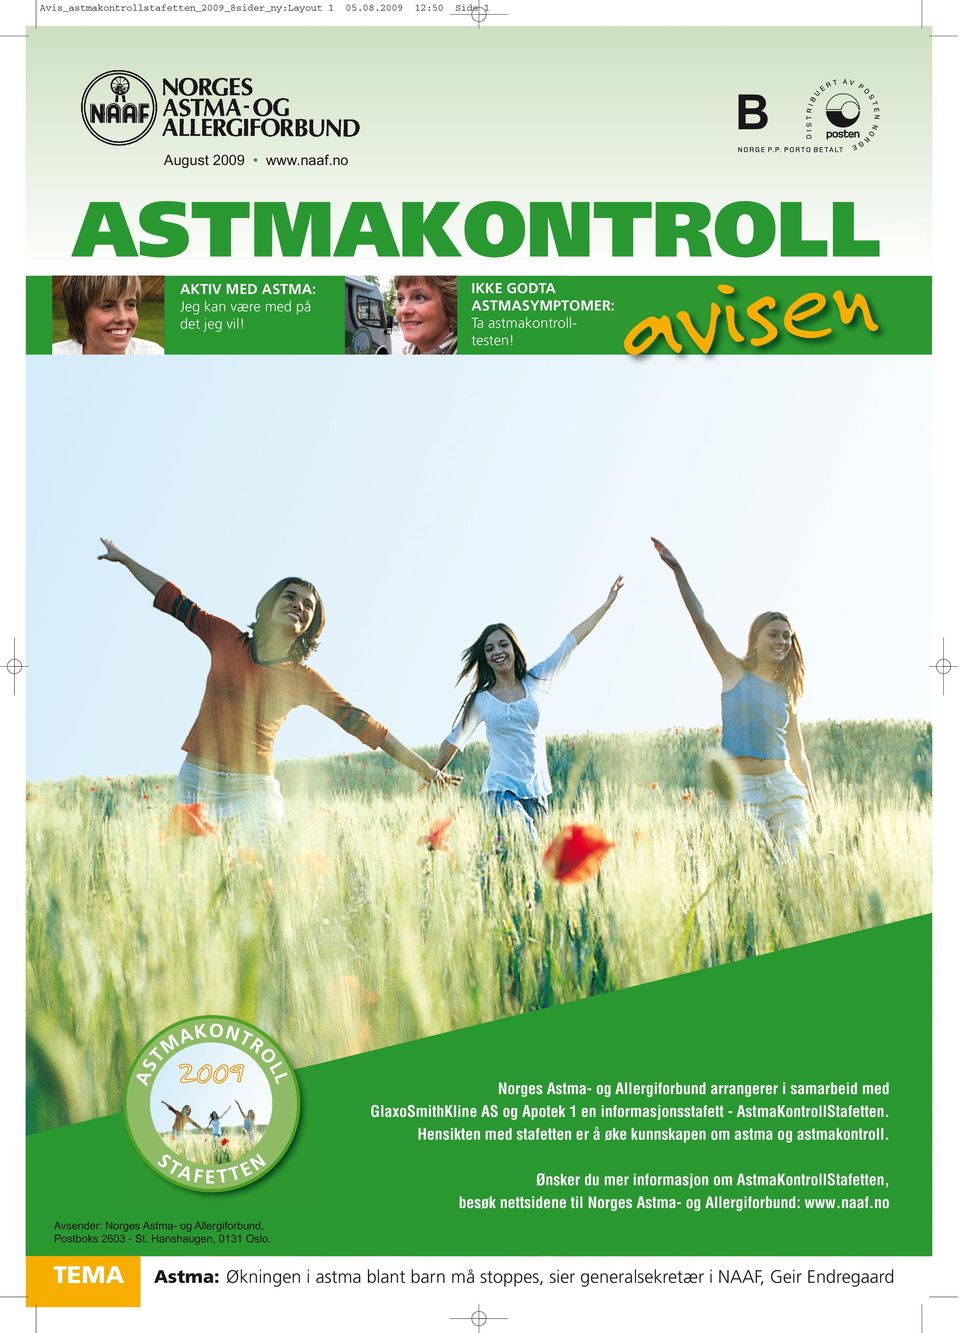 n e s i v a Norges Astma- og Allergiforbund arrangerer i samarbeid med GlaxoSmithKline AS og Apotek en informasjonsstafett - AstmaKontrollStafetten.